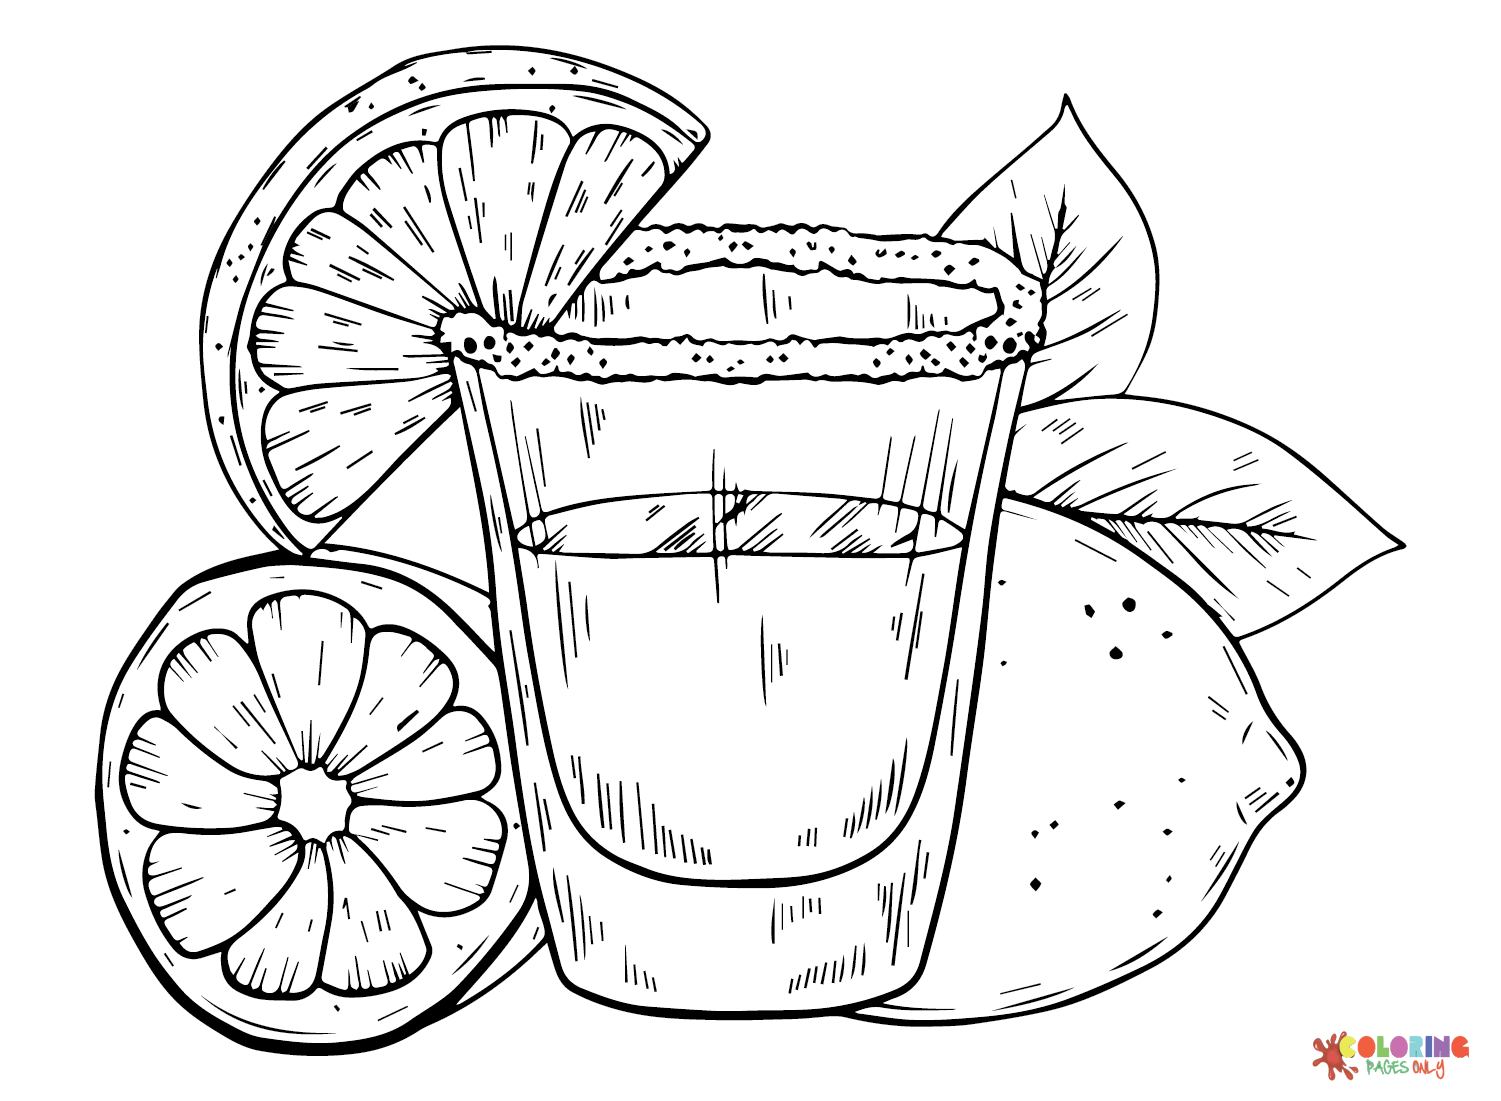 Лимонный сок из цитрусовых